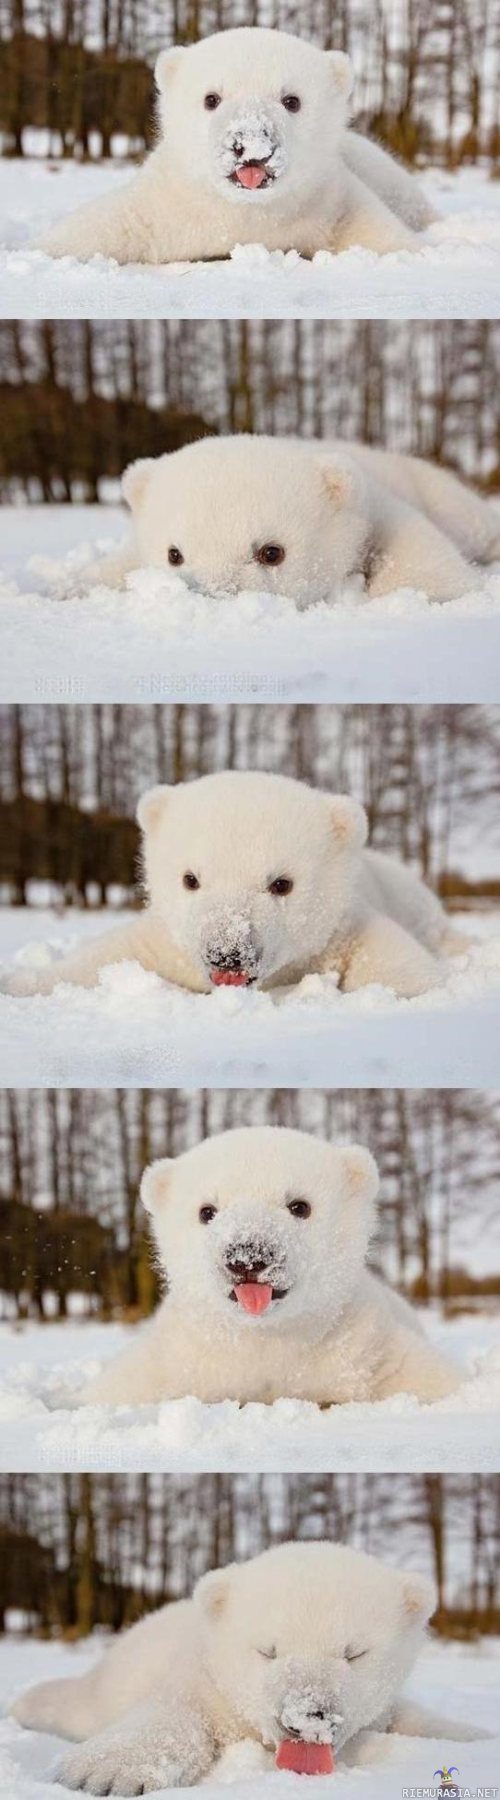 Jääkarhun pentu syömässä lunta - Jääkarhunpentu köllöttelemässä hangessa. Samalla on hyvä vähäsen maistella lumesta eri makuja.